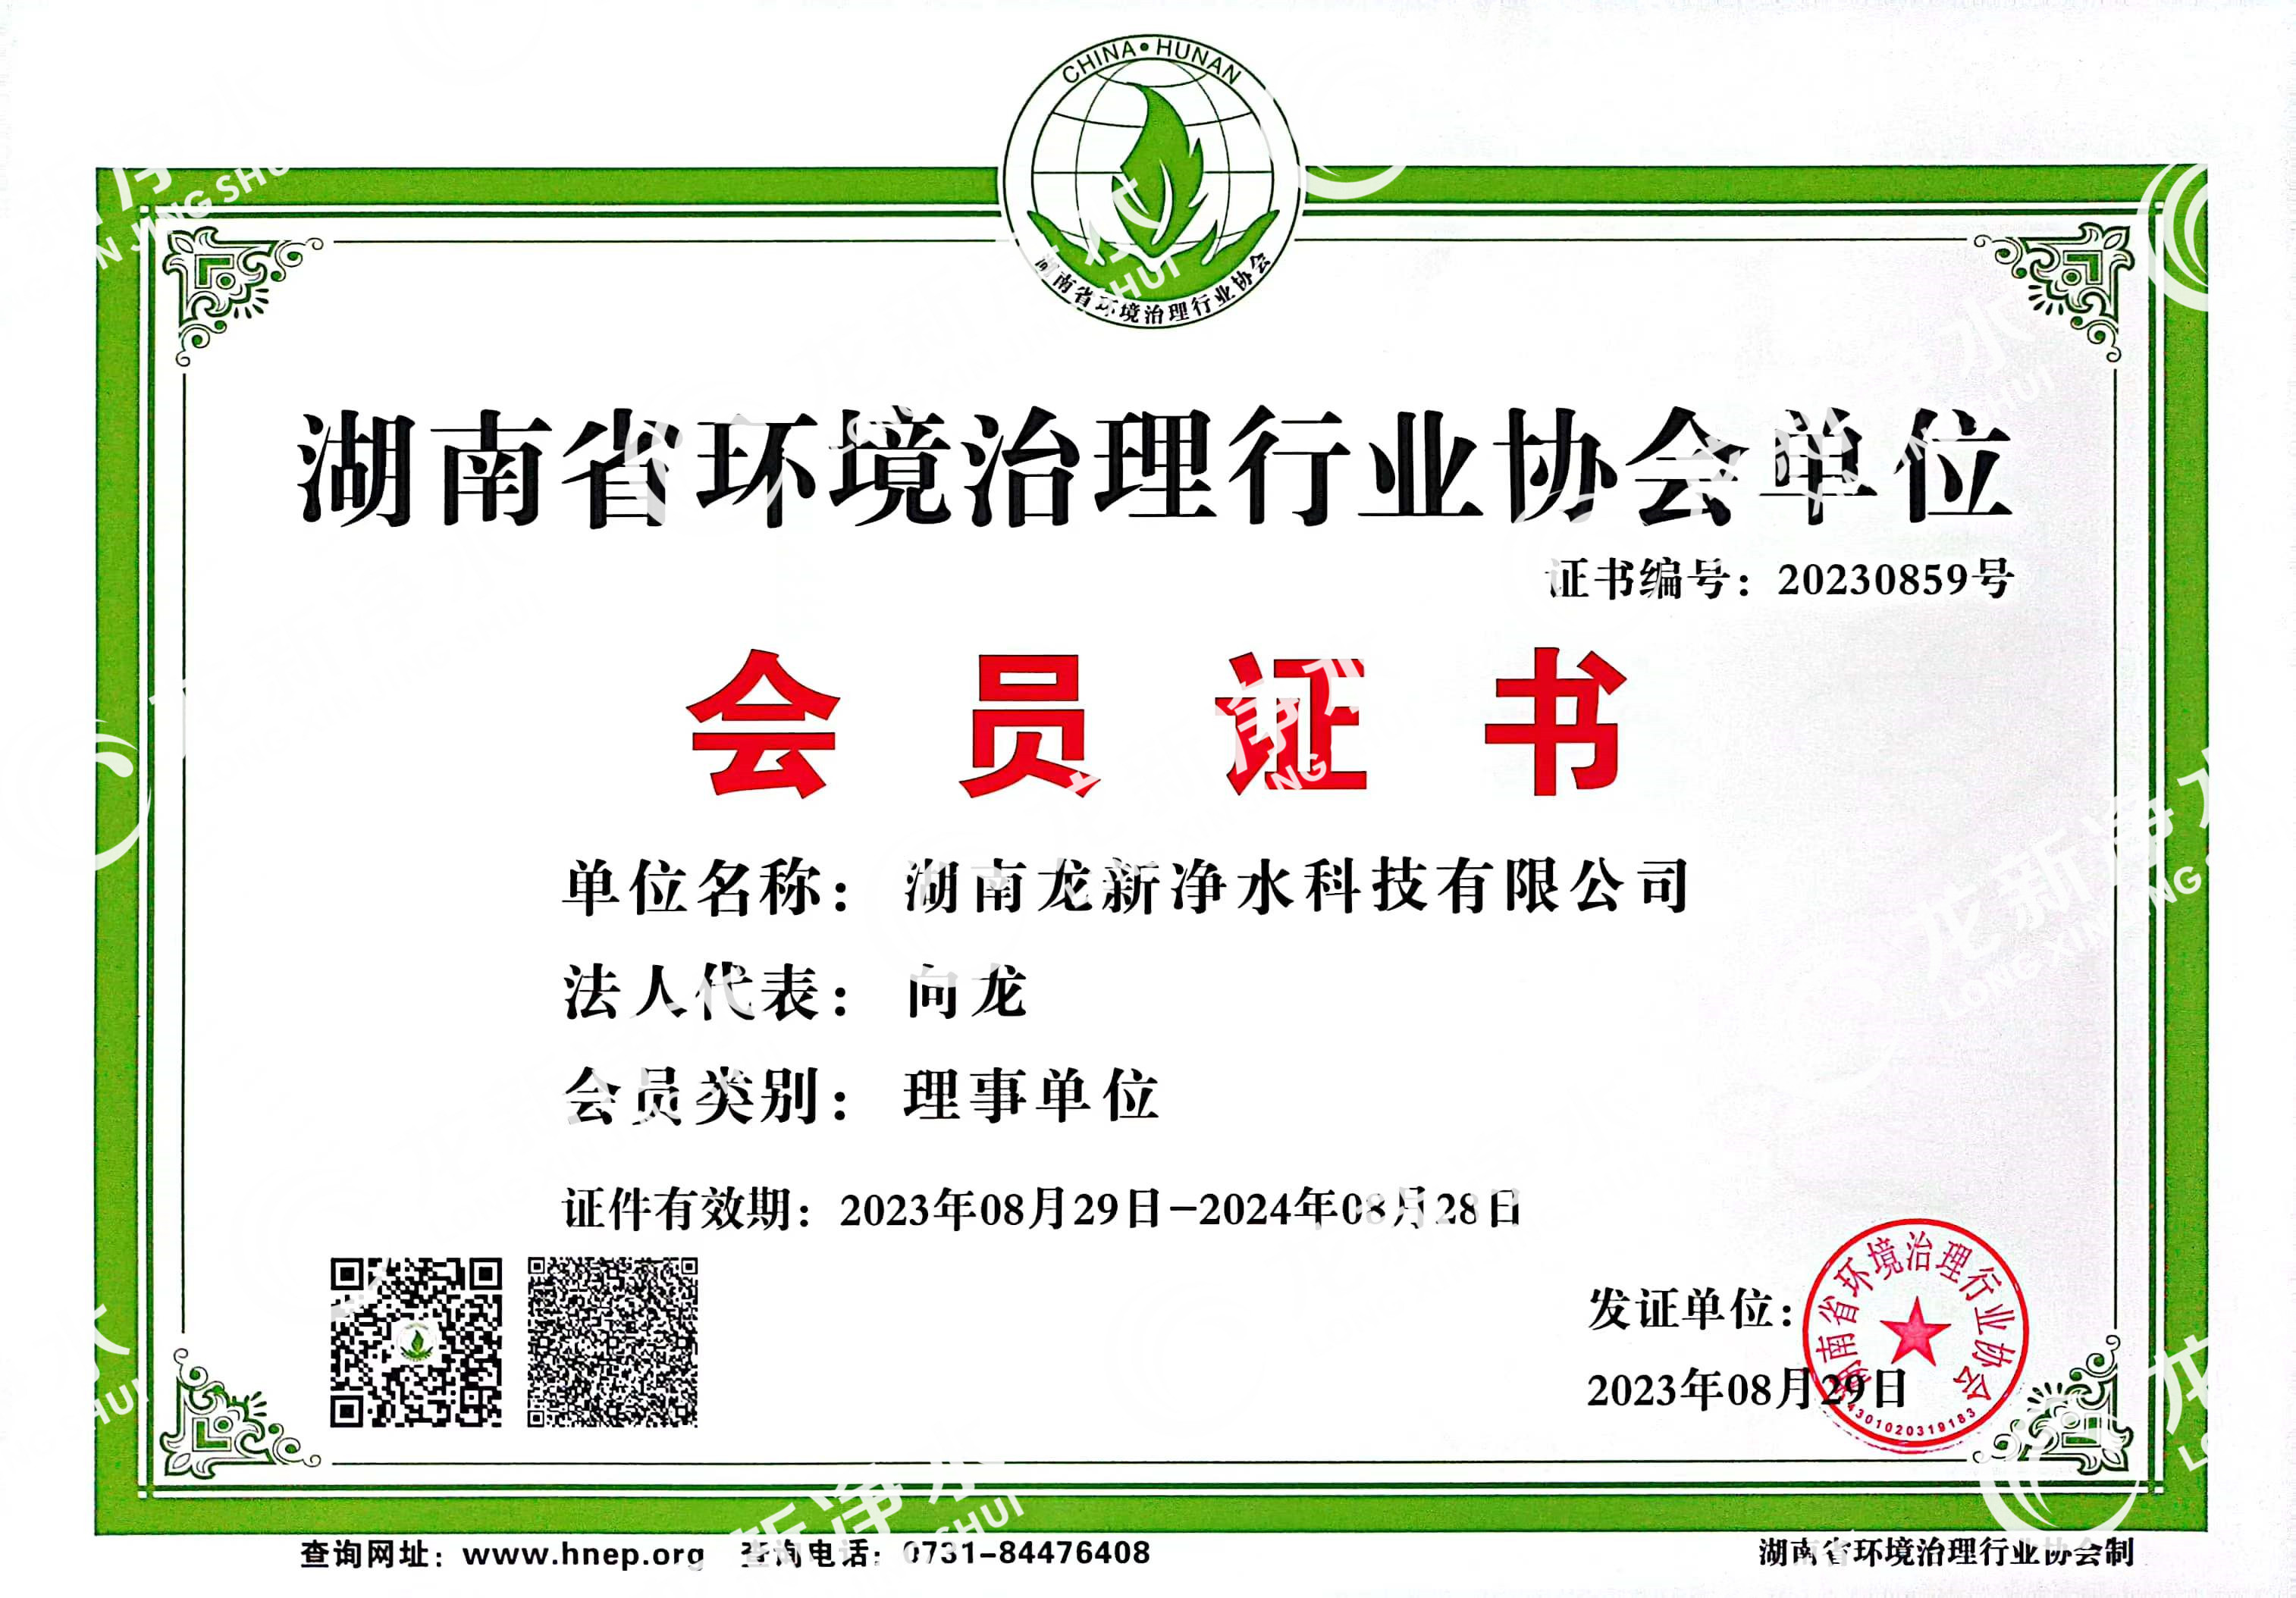 龙新净水加入湖南省环境治理行业协会